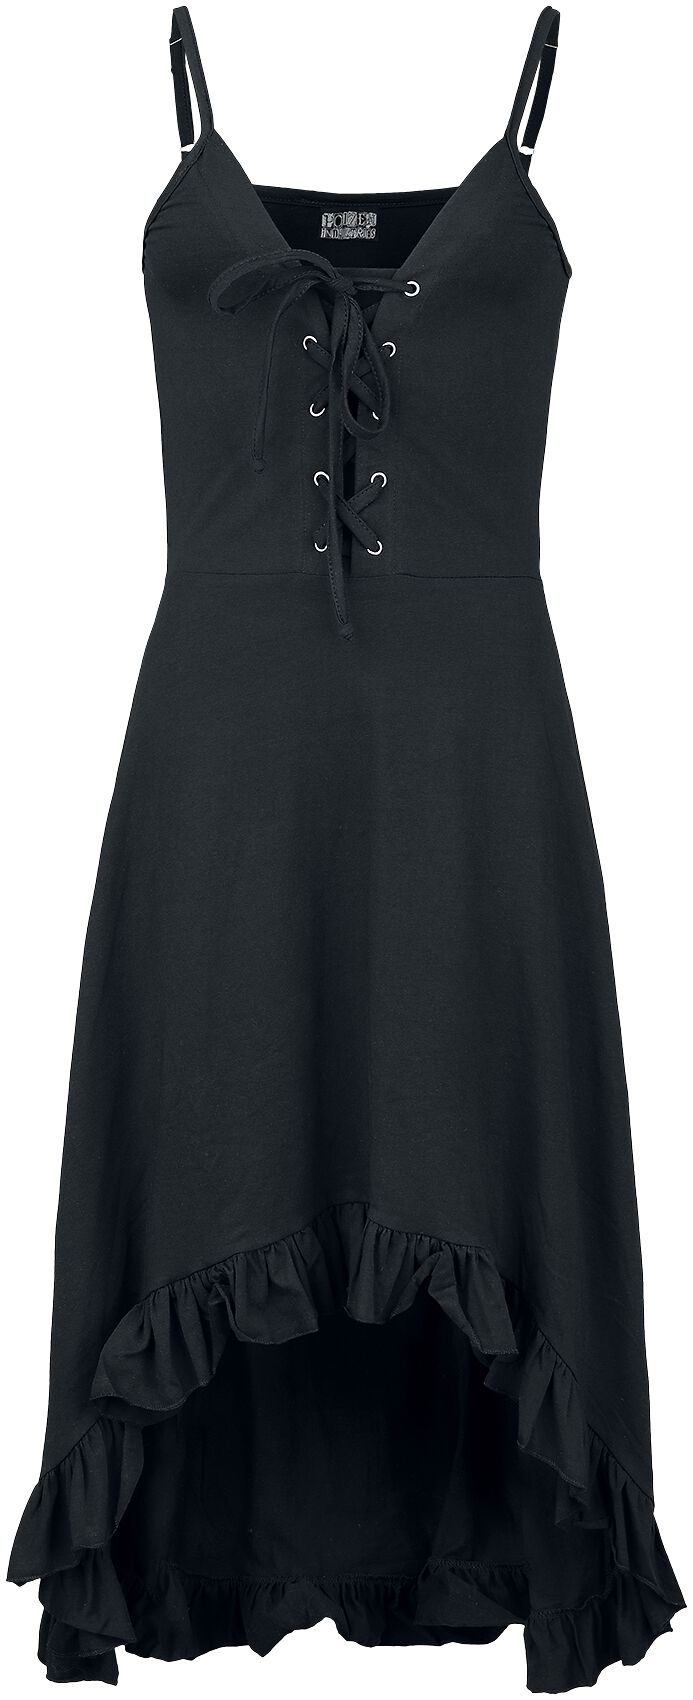 Innocent - Gothic Kurzes Kleid - Astraea Dress - S bis 4XL - für Damen - Größe XXL - schwarz